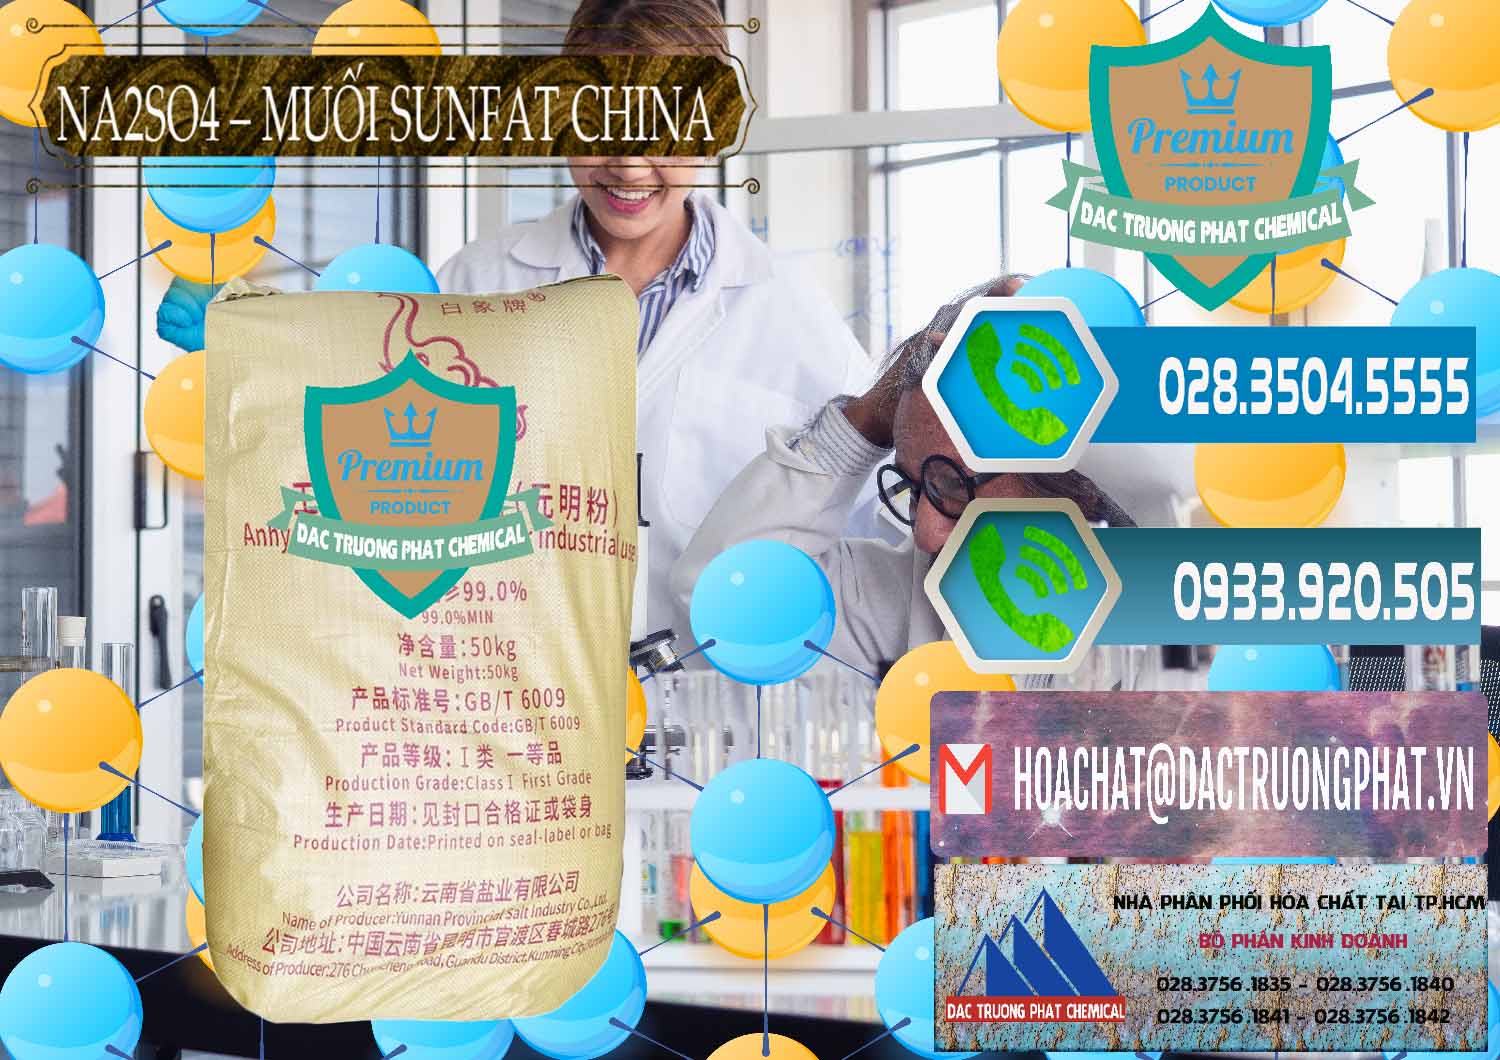 Nơi chuyên cung ứng và bán Sodium Sulphate - Muối Sunfat Na2SO4 Logo Con Voi Trung Quốc China - 0409 - Nhà nhập khẩu và cung cấp hóa chất tại TP.HCM - congtyhoachat.net